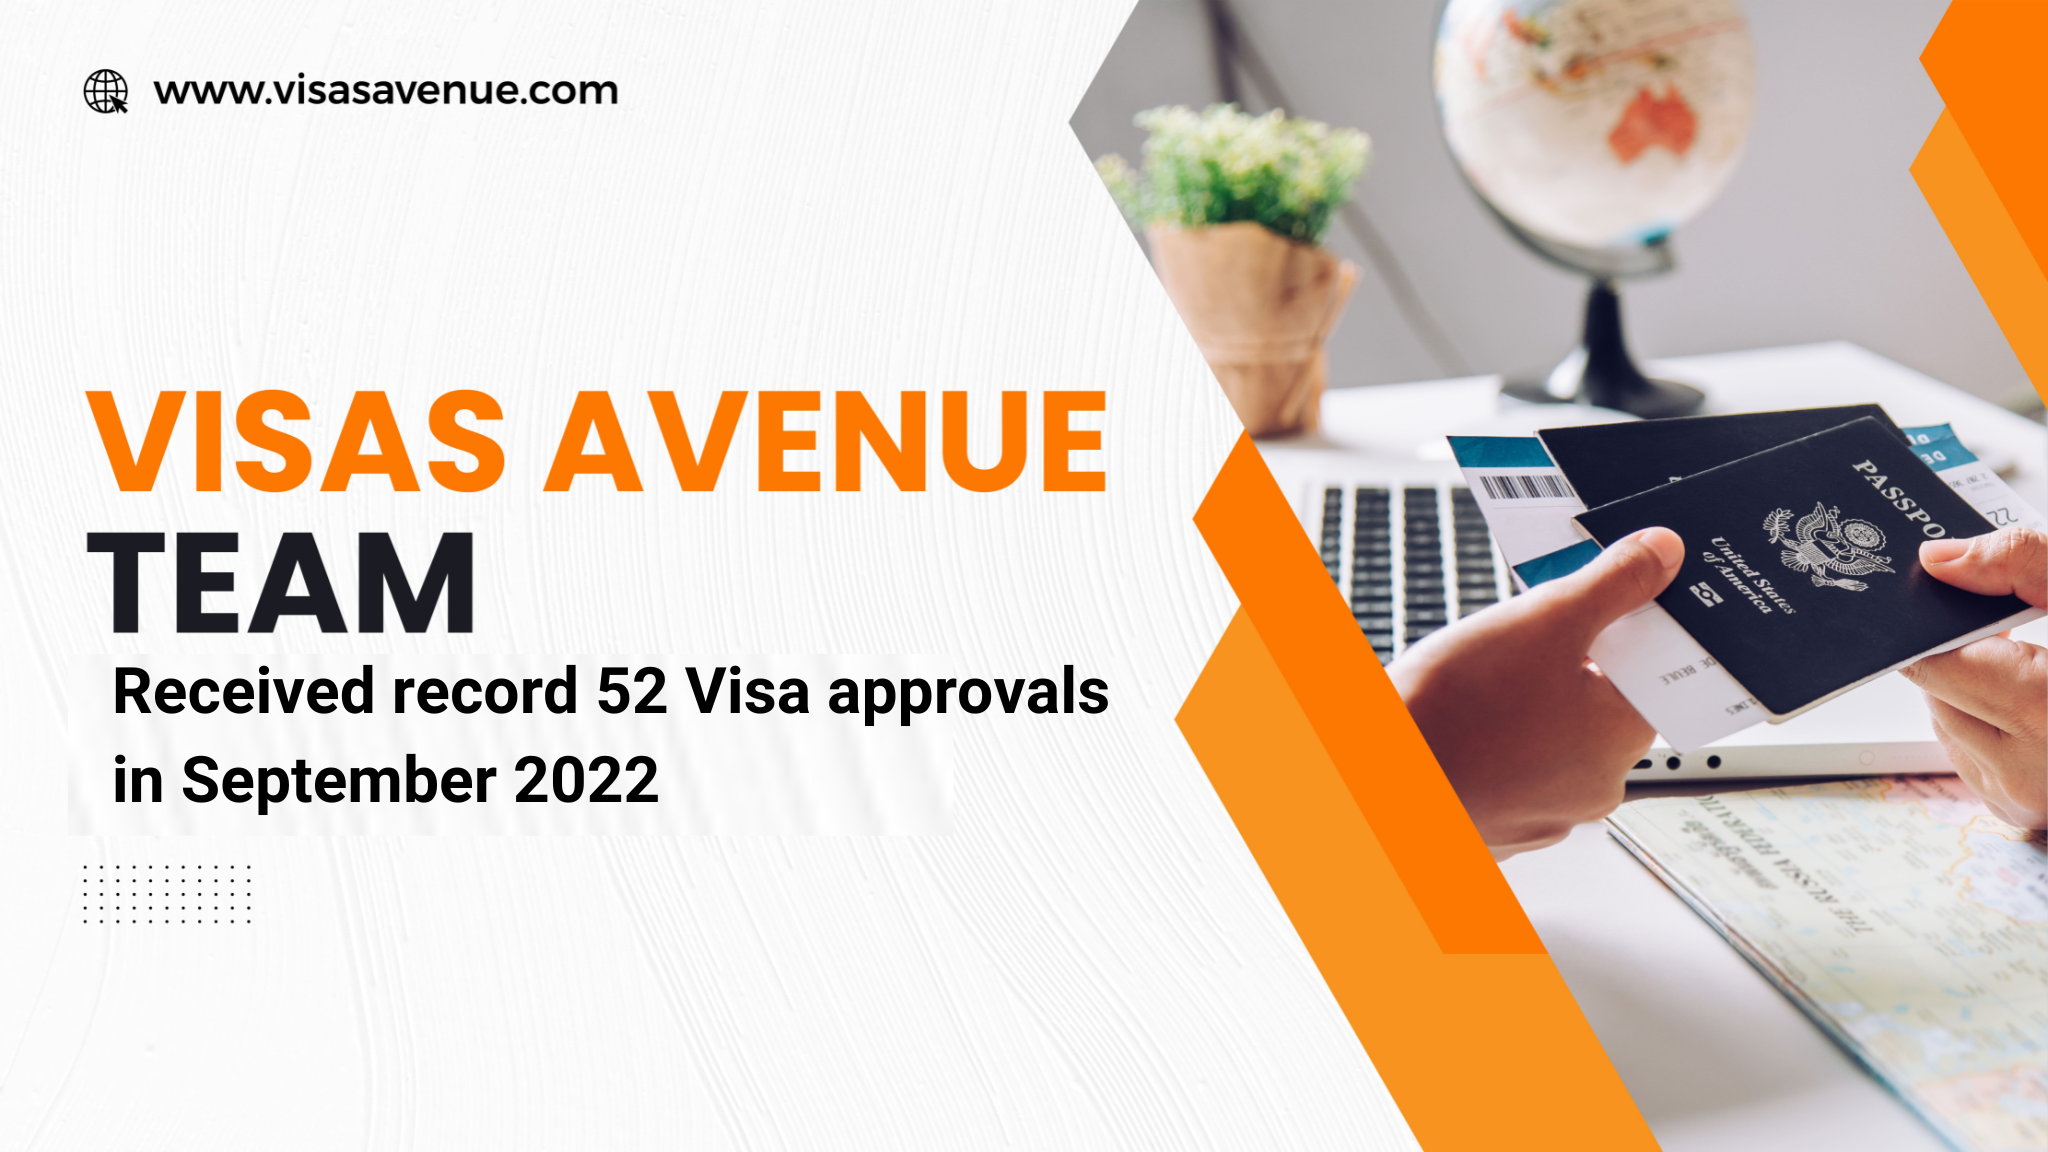 Visas Avenue received 52 Visa approvals in September 2022